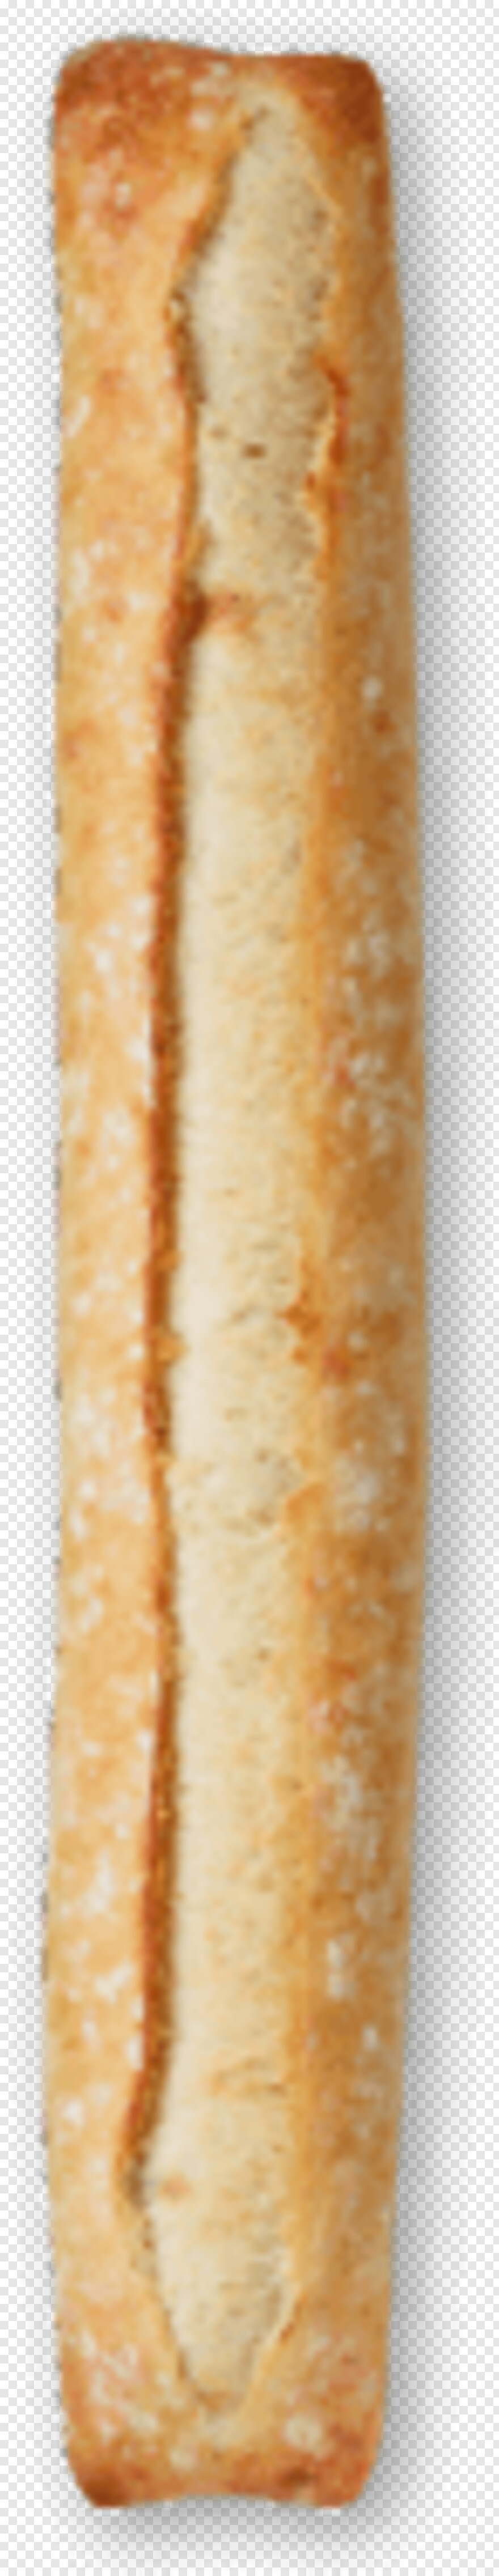 baguette # 420960